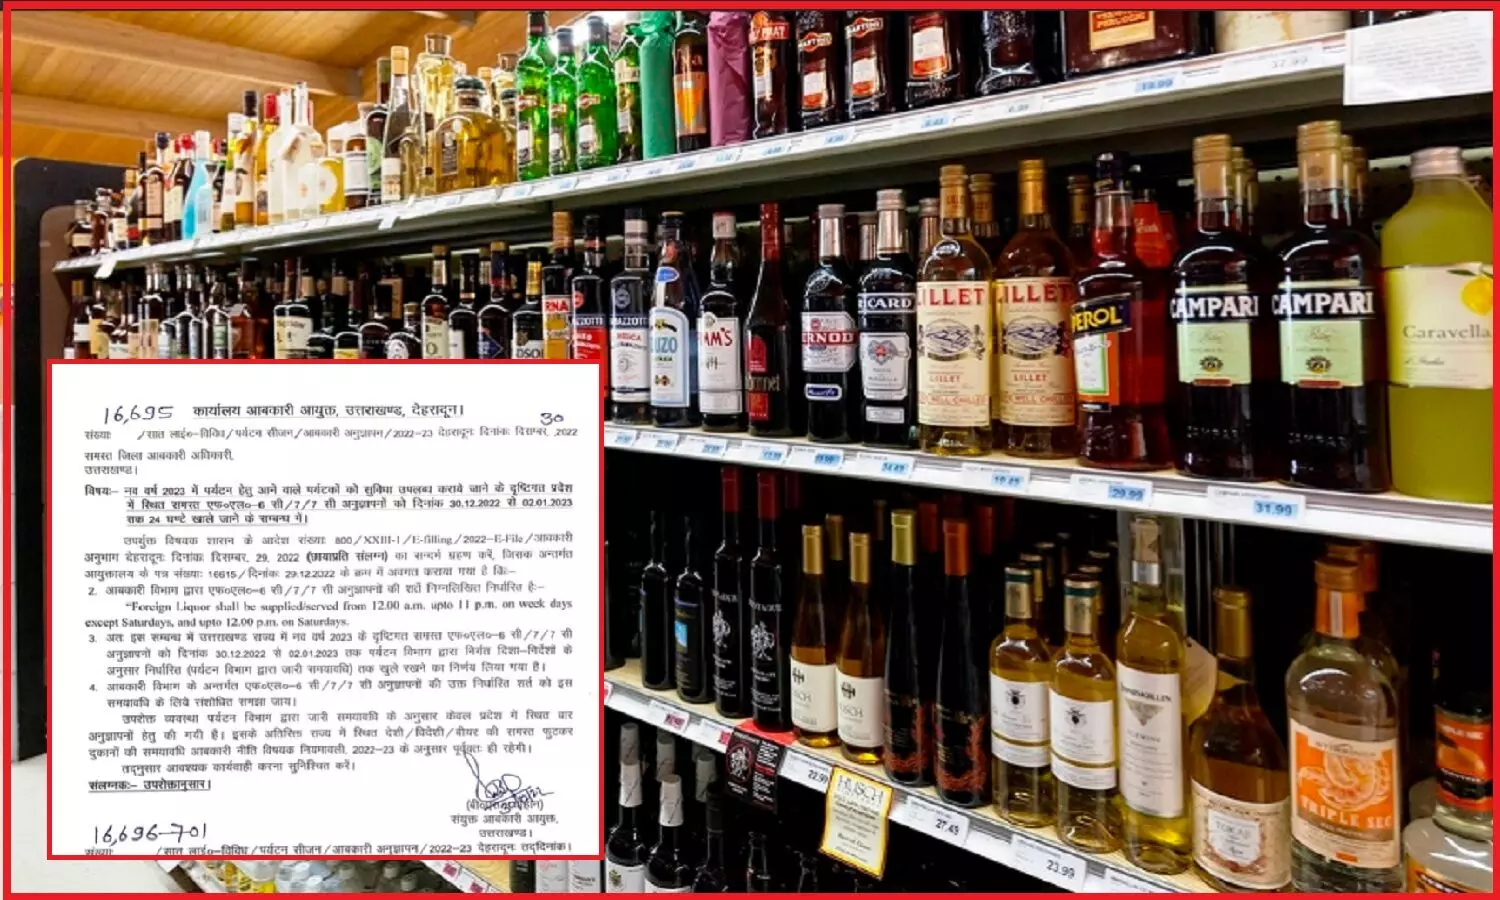 उत्तराखंड में शराब की दुकानें नहीं बार खुलेंगे 24 घण्टे, भारी विरोध के बाद जारी हुआ नया आदेश